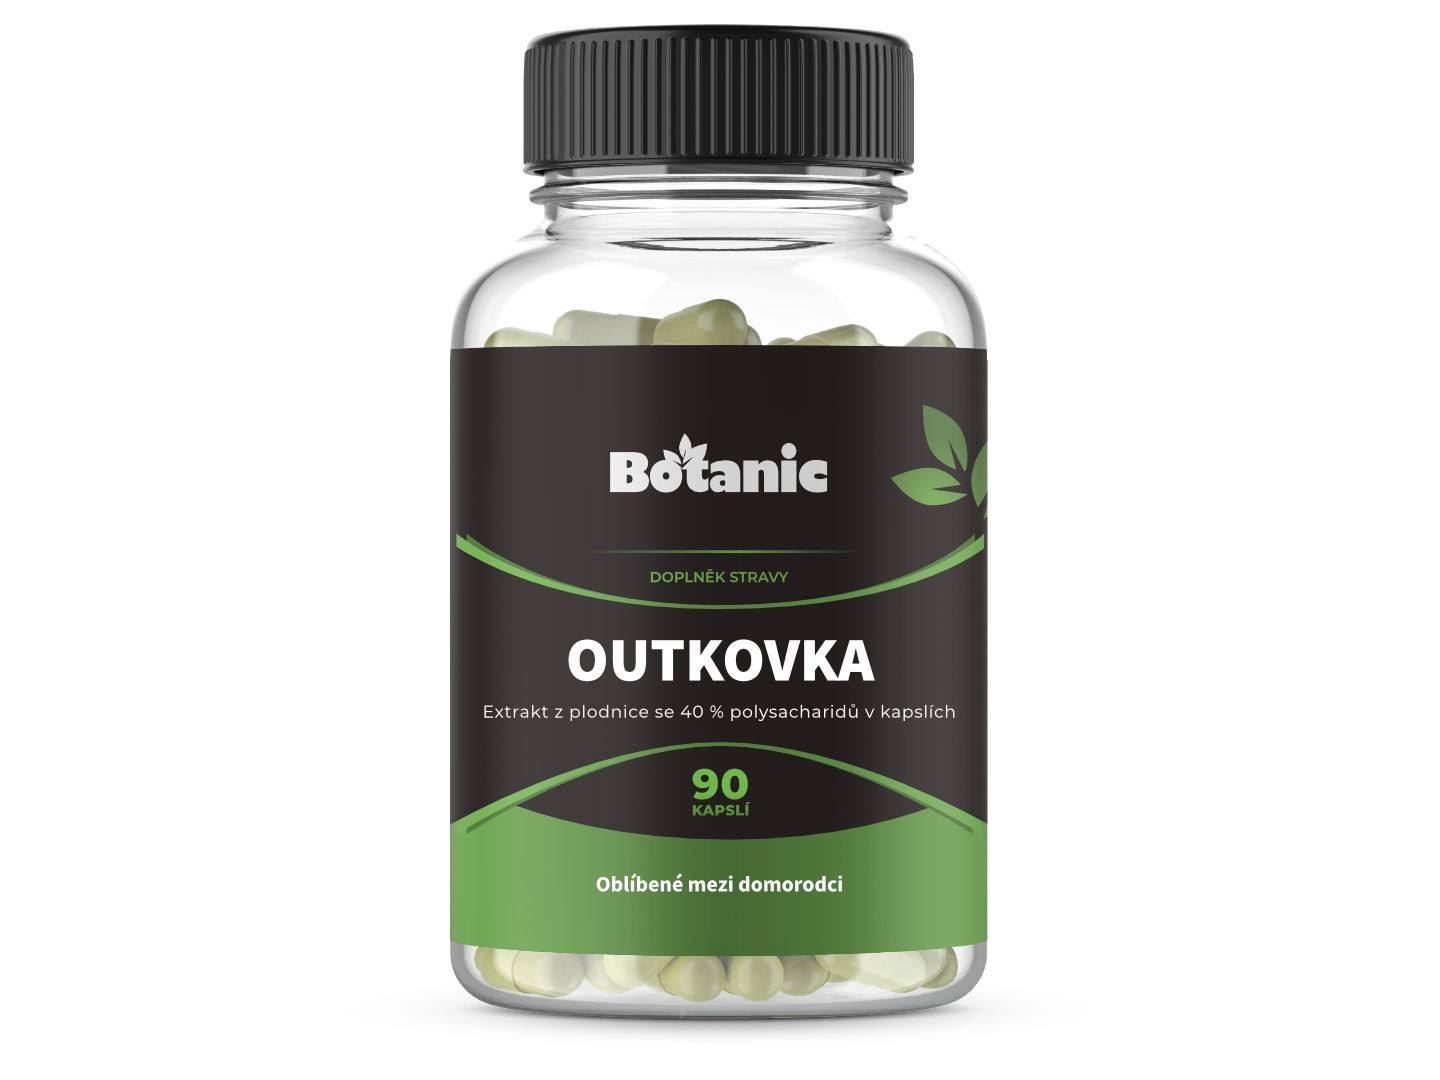 Botanic Outkovka (Coriolus) Extrakt z plodnice se 40 % polysacharidů v kapslích 90kap.